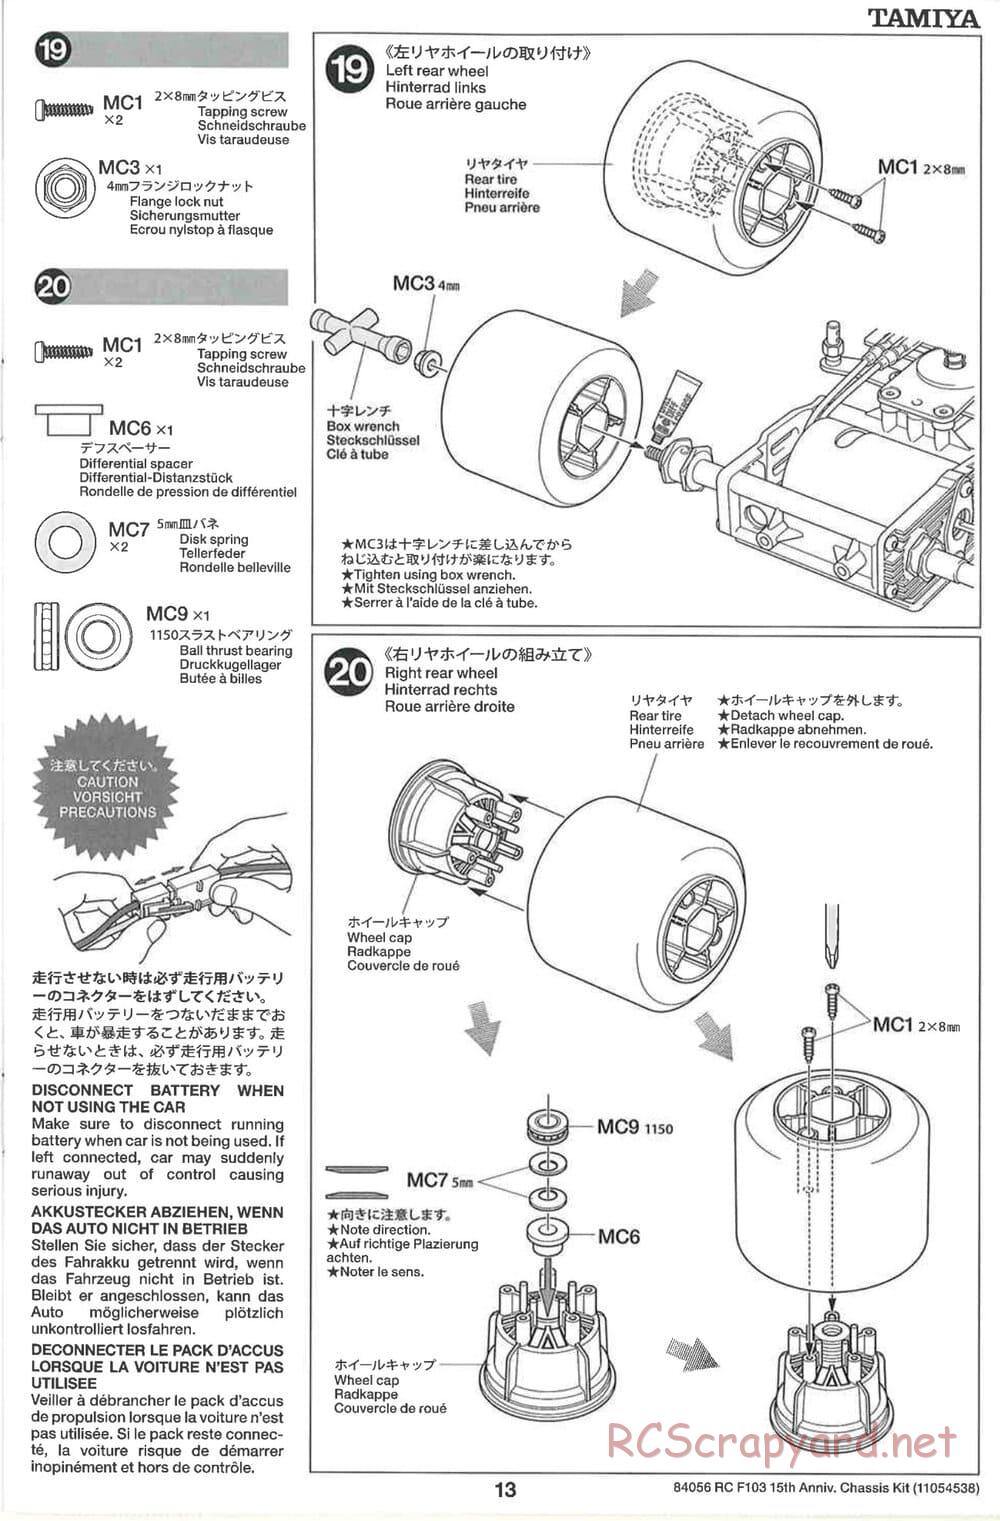 Tamiya - F103 15th Anniversary Chassis - Manual - Page 13